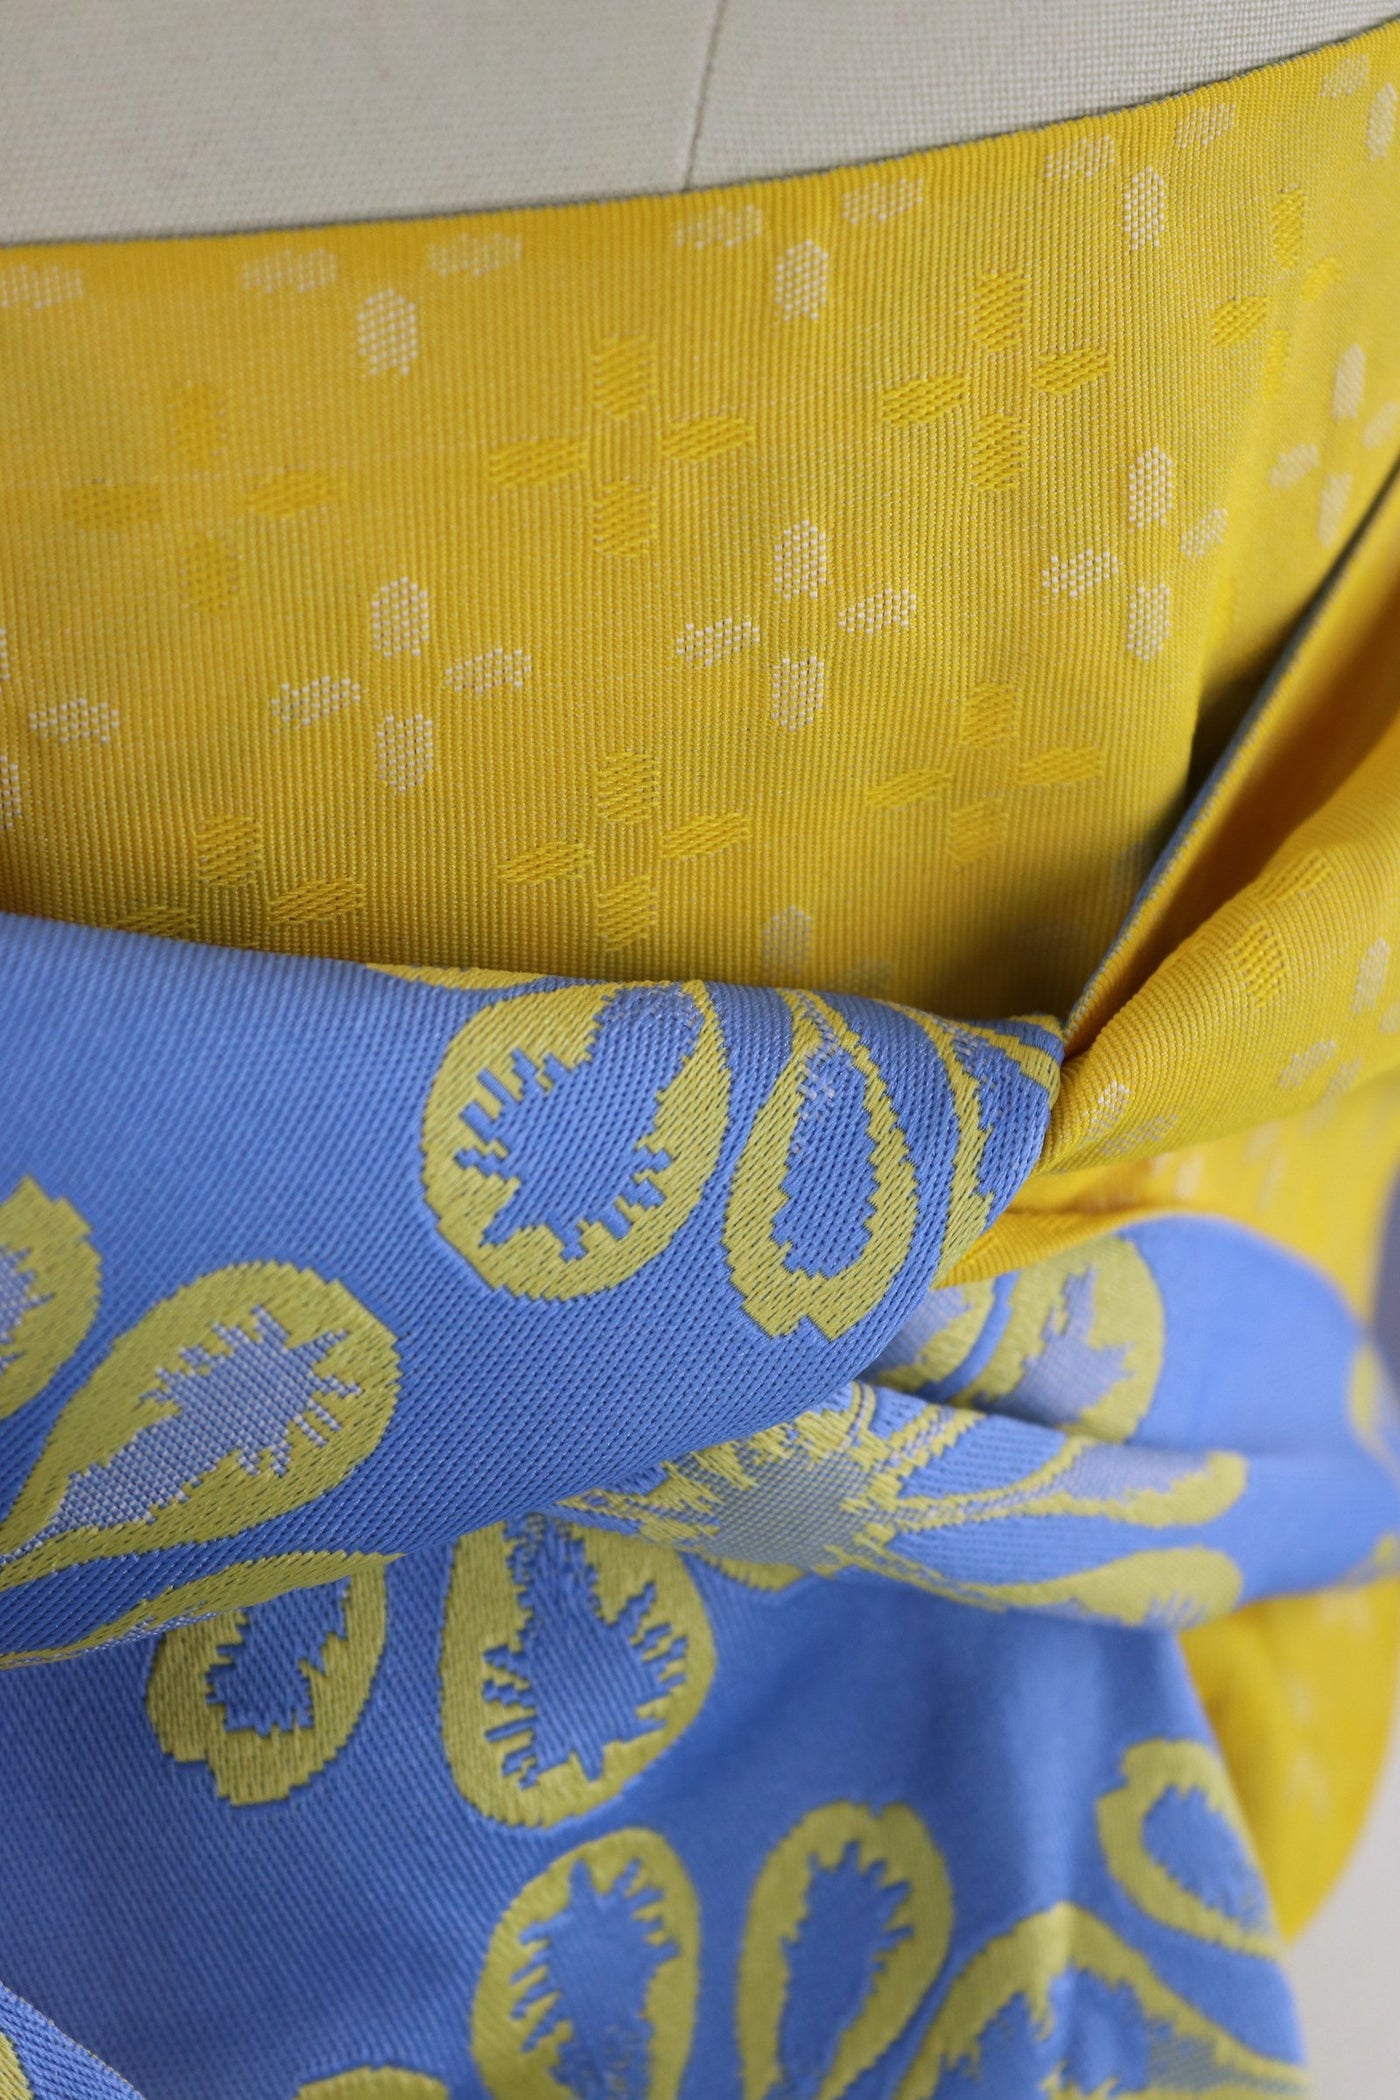 Vintage Kimono Hanhaba Obi Sash / French Blue & Bright Yellow - ThisBlueBird